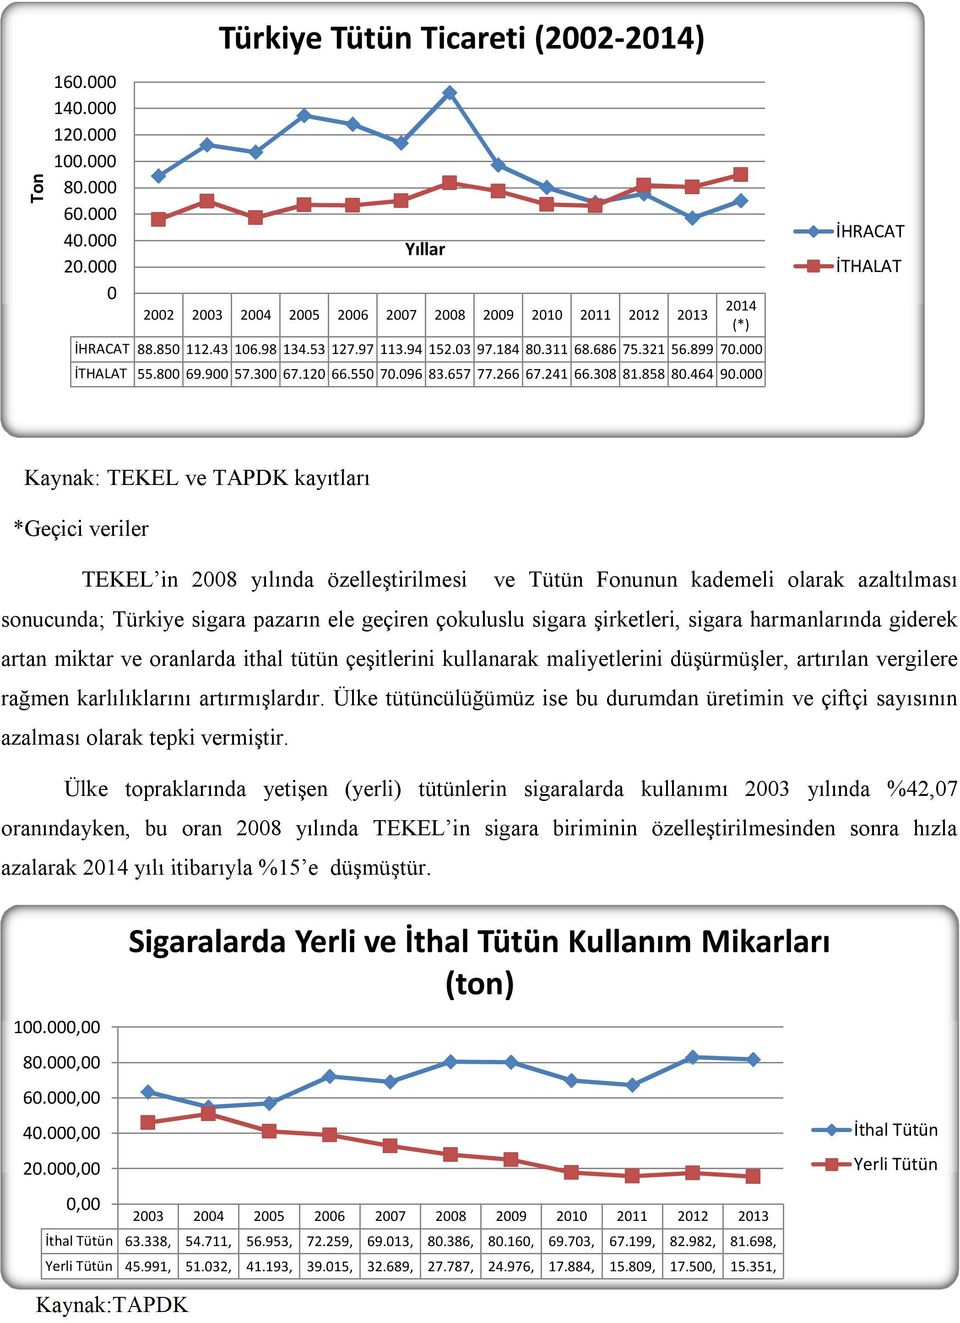 Kaynak: TEKEL ve TAPDK kayıtları *Geçici veriler TEKEL in 28 yılında özelleştirilmesi ve Tütün Fonunun kademeli olarak azaltılması sonucunda; Türkiye sigara pazarın ele geçiren çokuluslu sigara